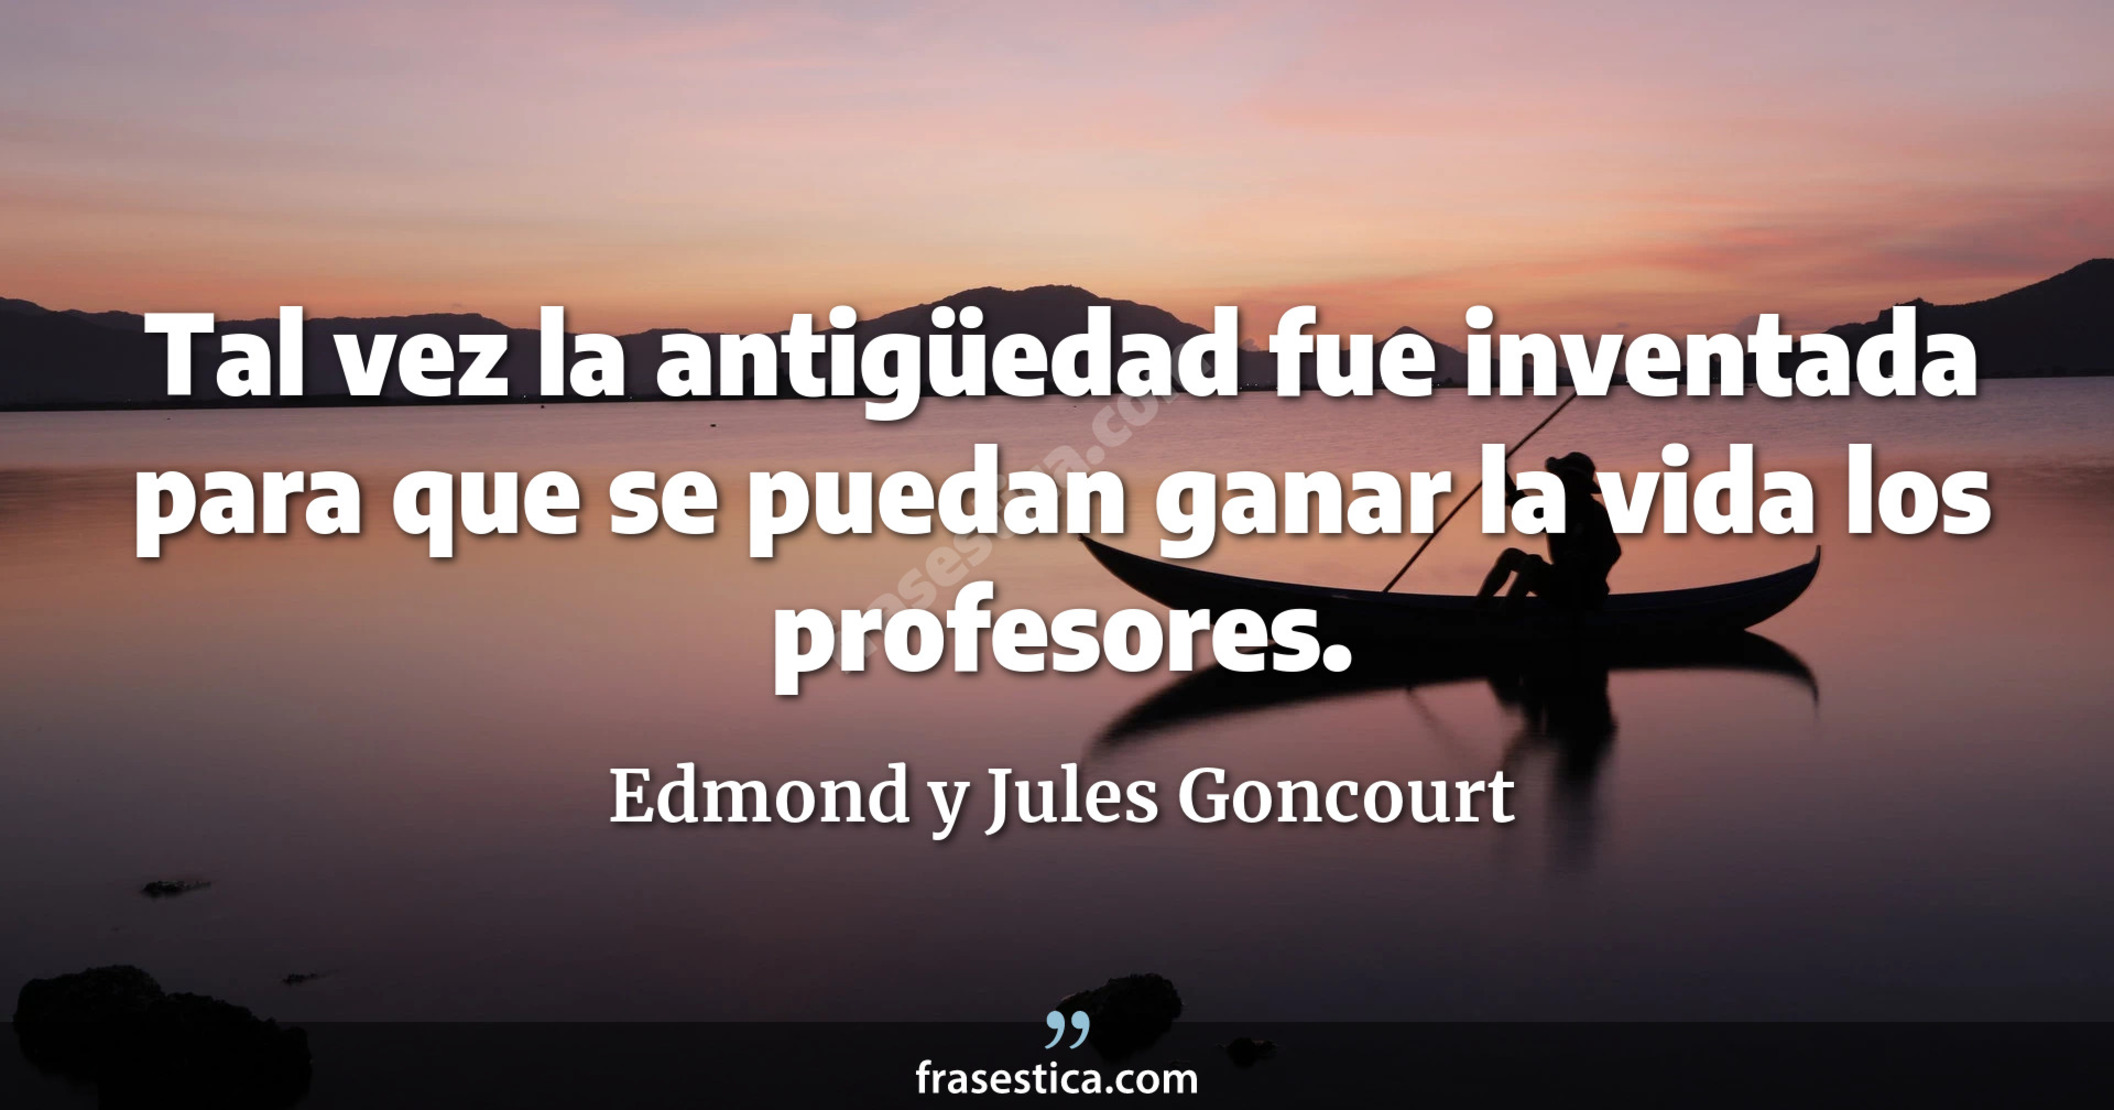 Tal vez la antigüedad fue inventada para que se puedan ganar la vida los profesores. - Edmond y Jules Goncourt